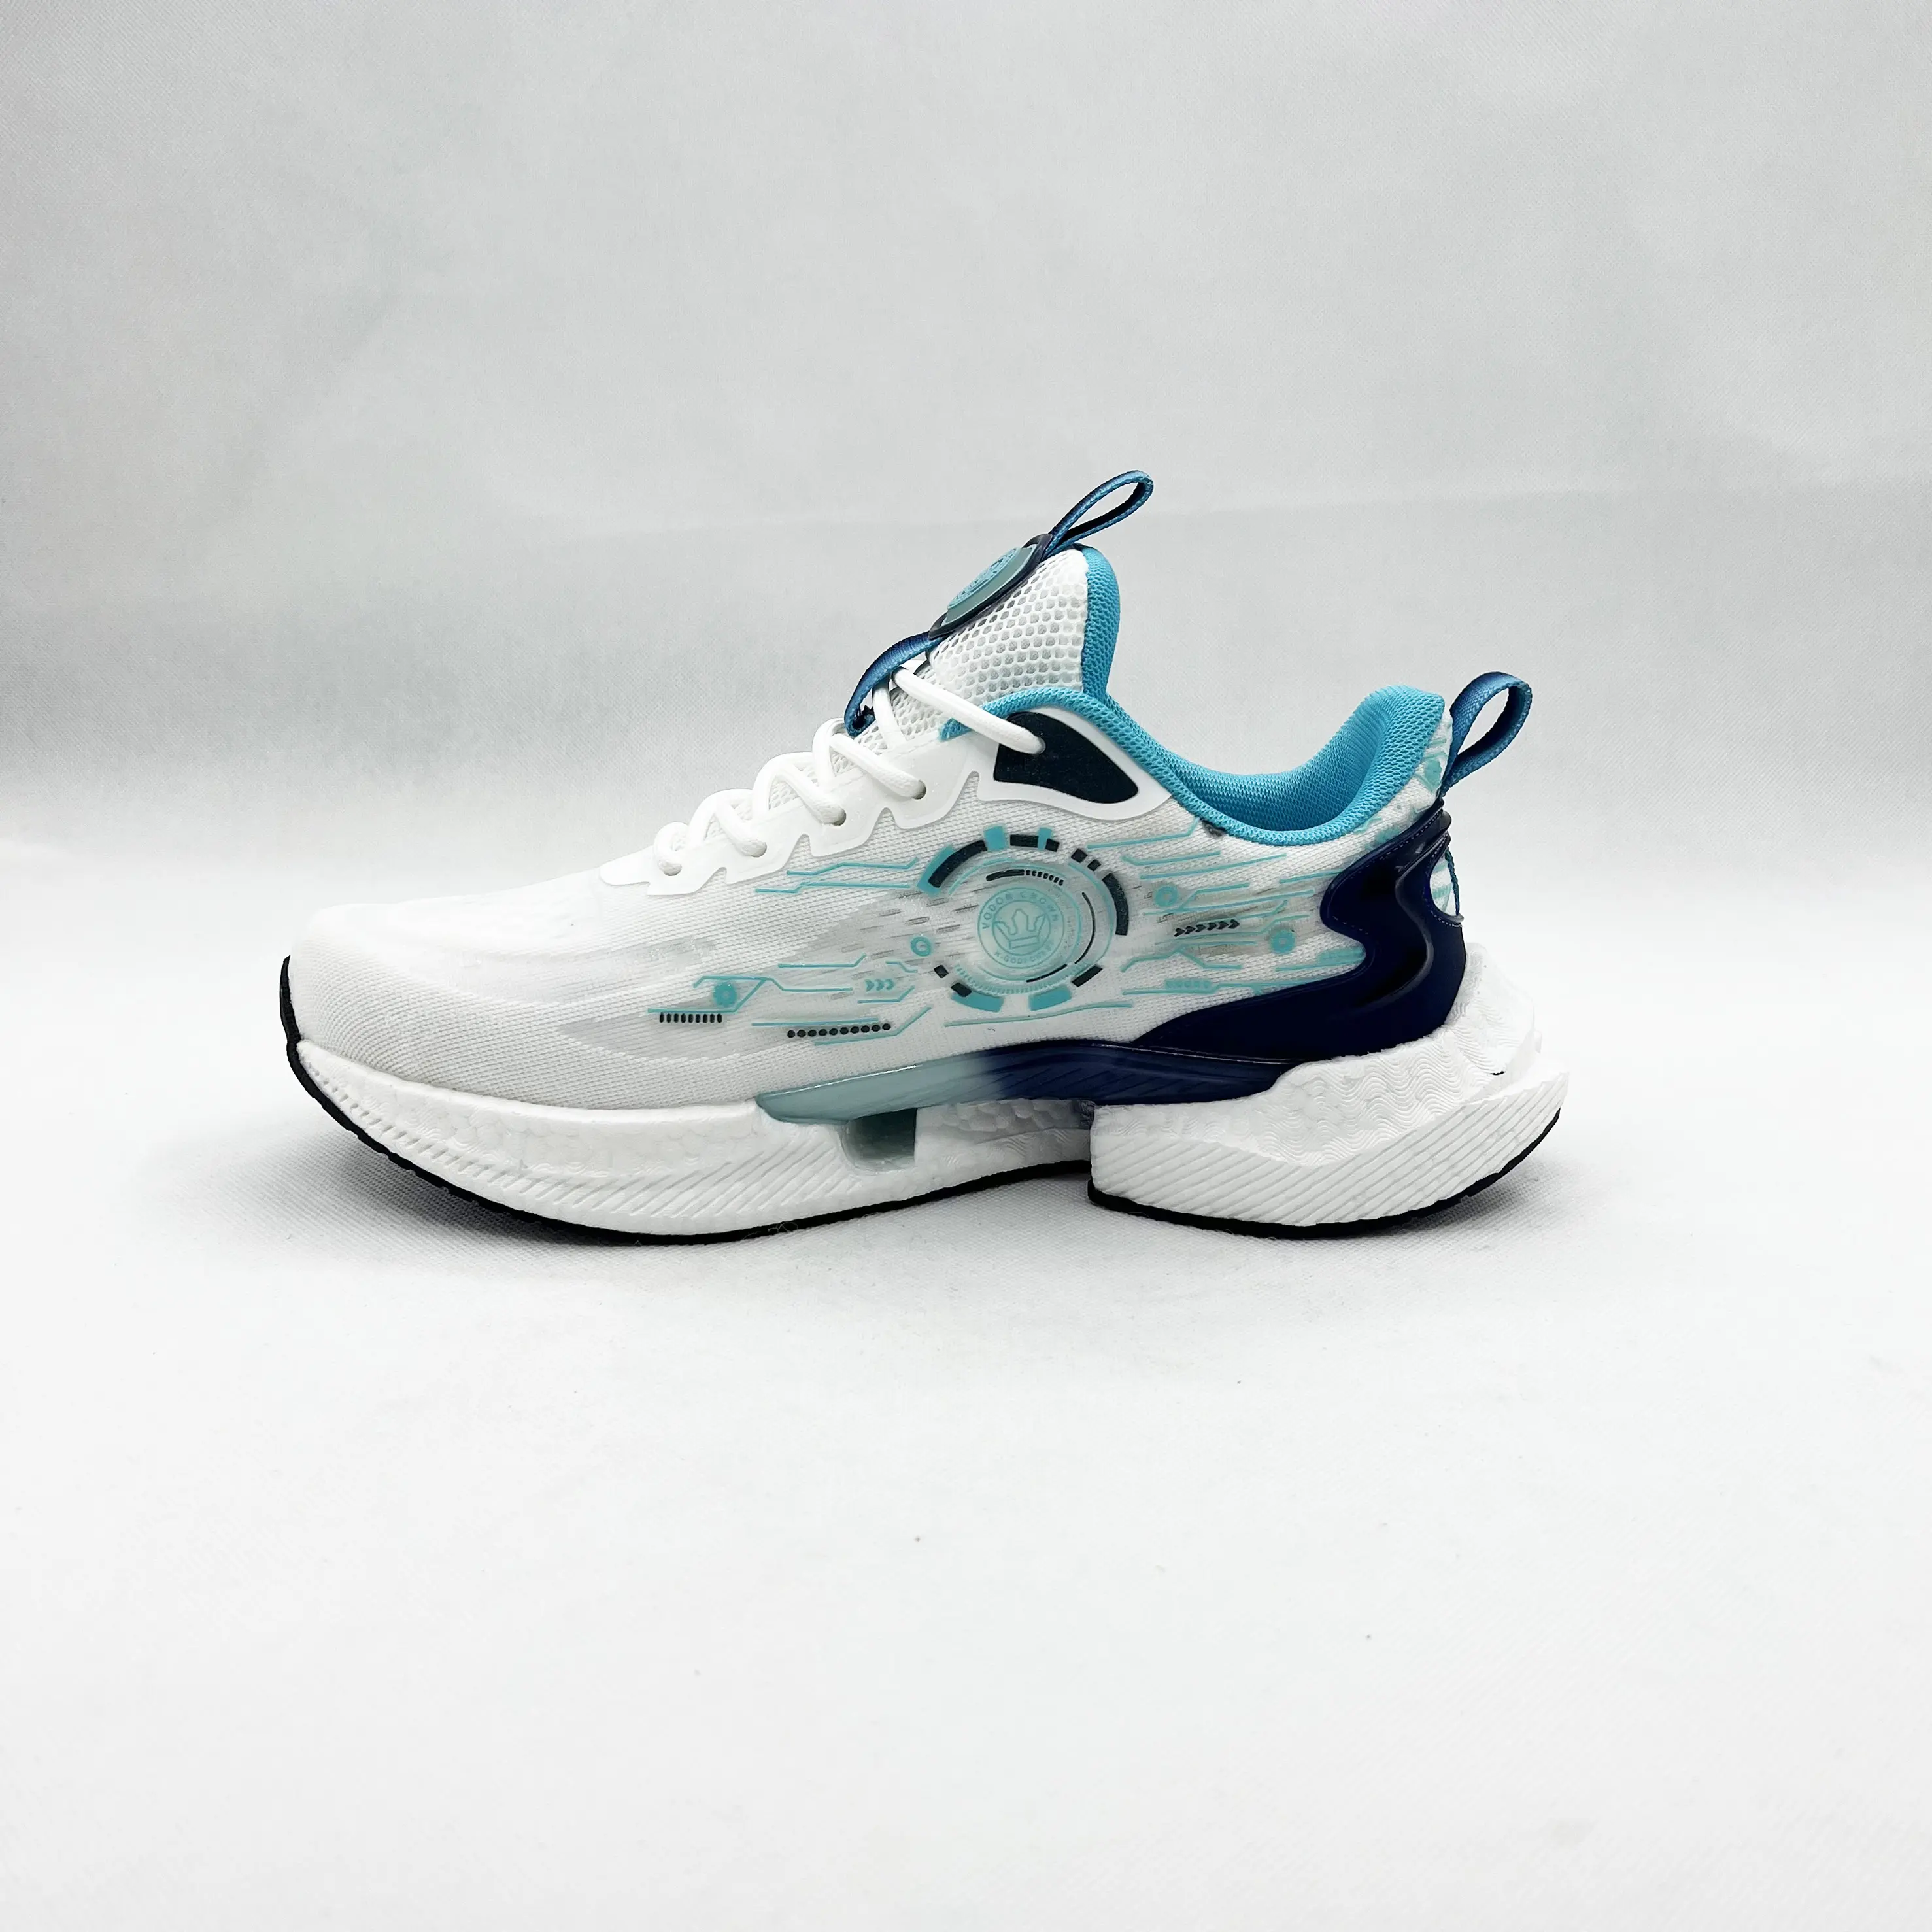 Fábrica al por mayor de moda transpirable zapatos para correr para los hombres de encargo del OEM al aire libre zapato medidor deportes hombres caminar estilo zapatos Casuales